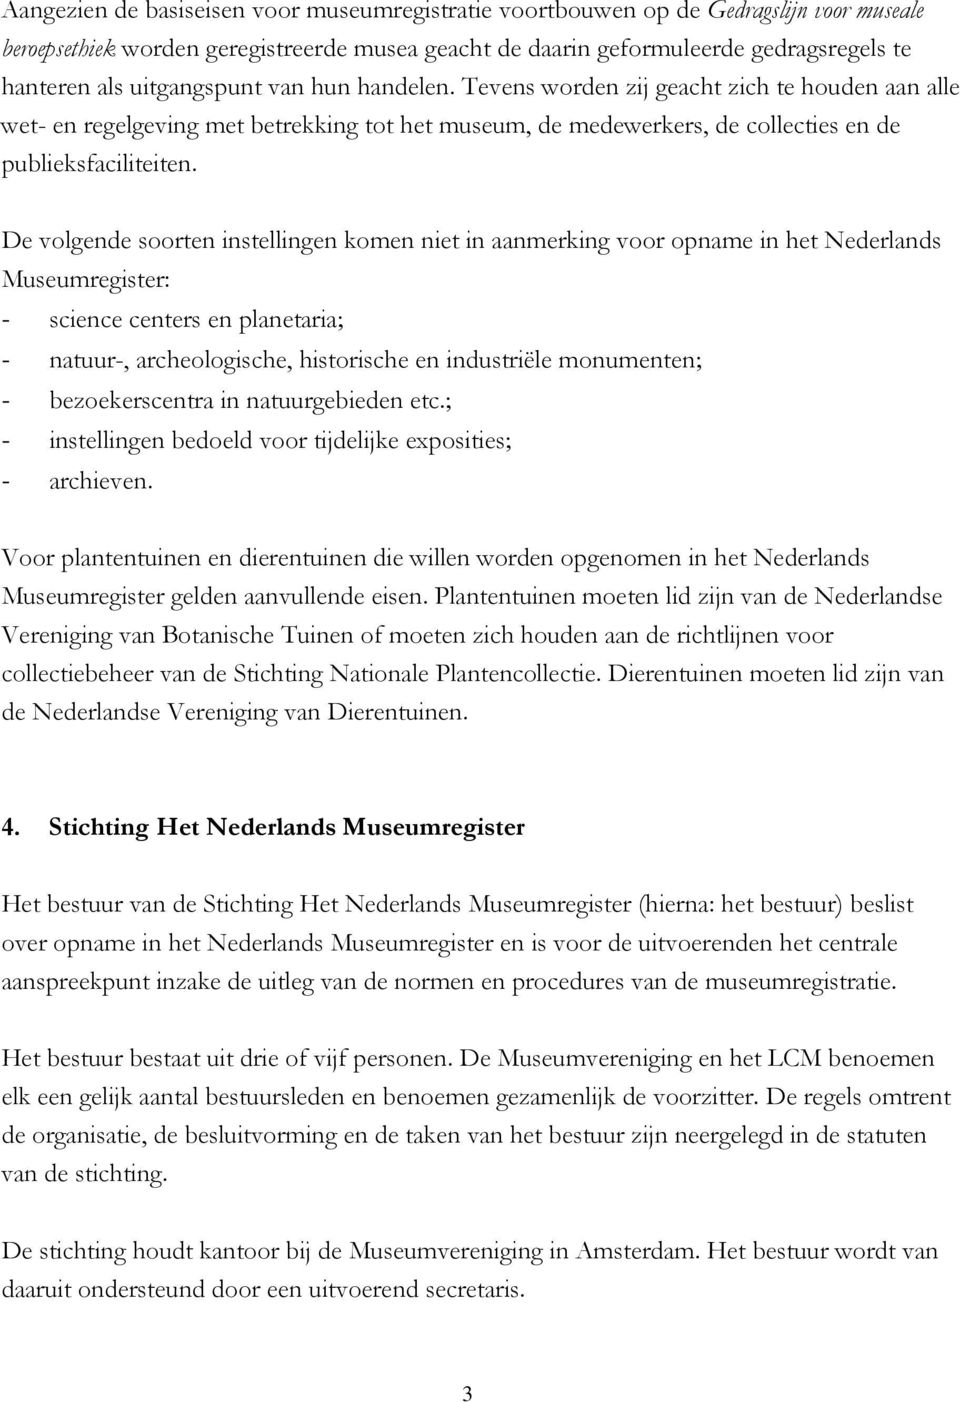 De volgende soorten instellingen komen niet in aanmerking voor opname in het Nederlands Museumregister: - science centers en planetaria; - natuur-, archeologische, historische en industriële